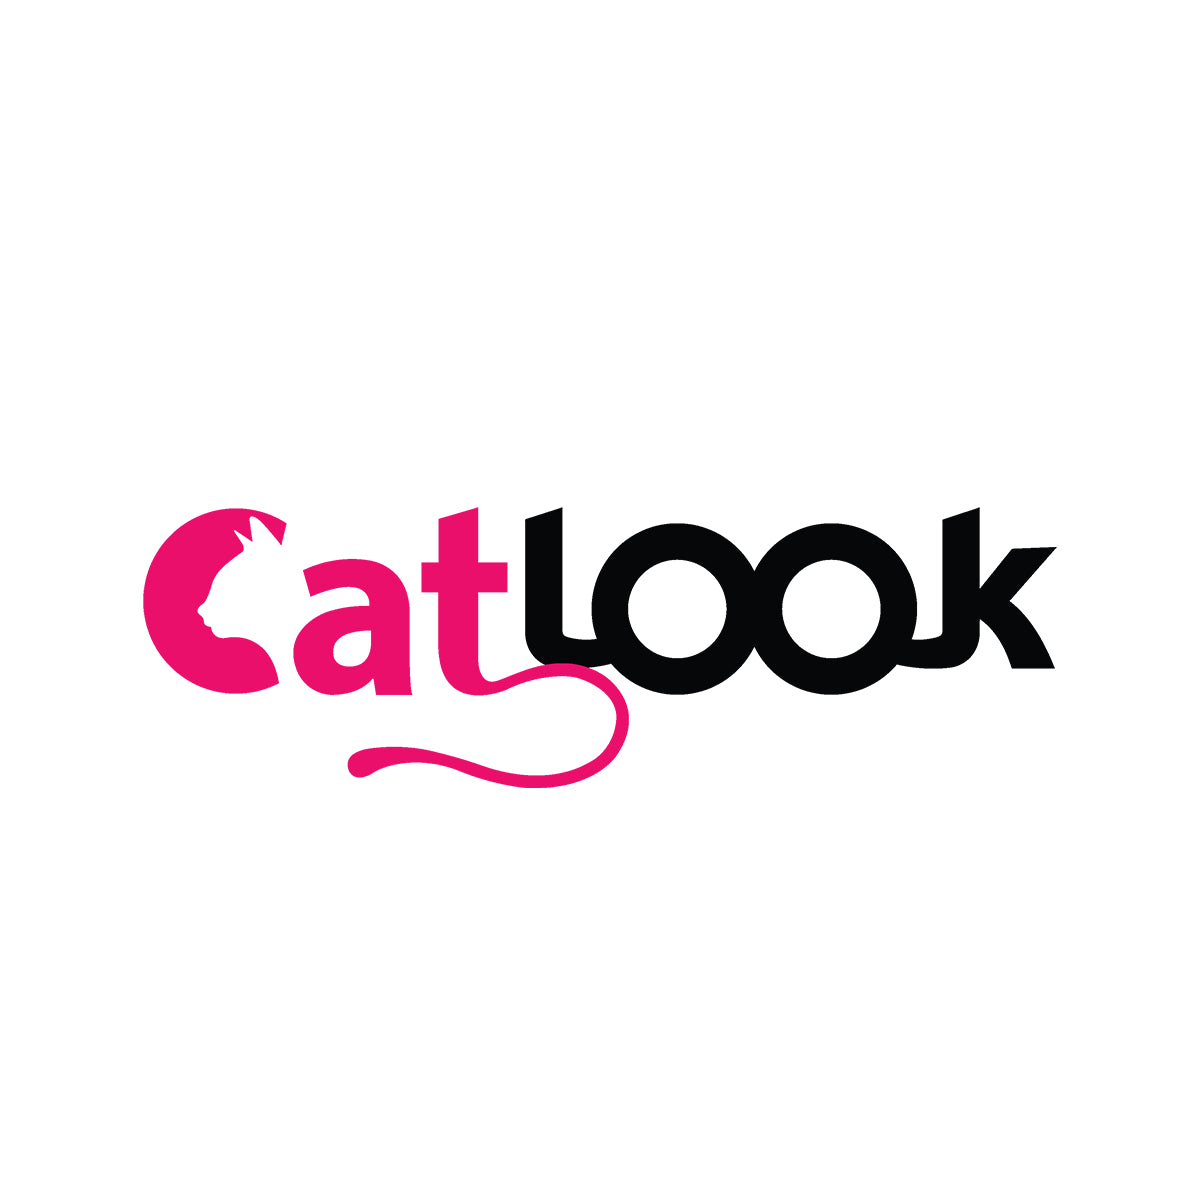 Catlook.com